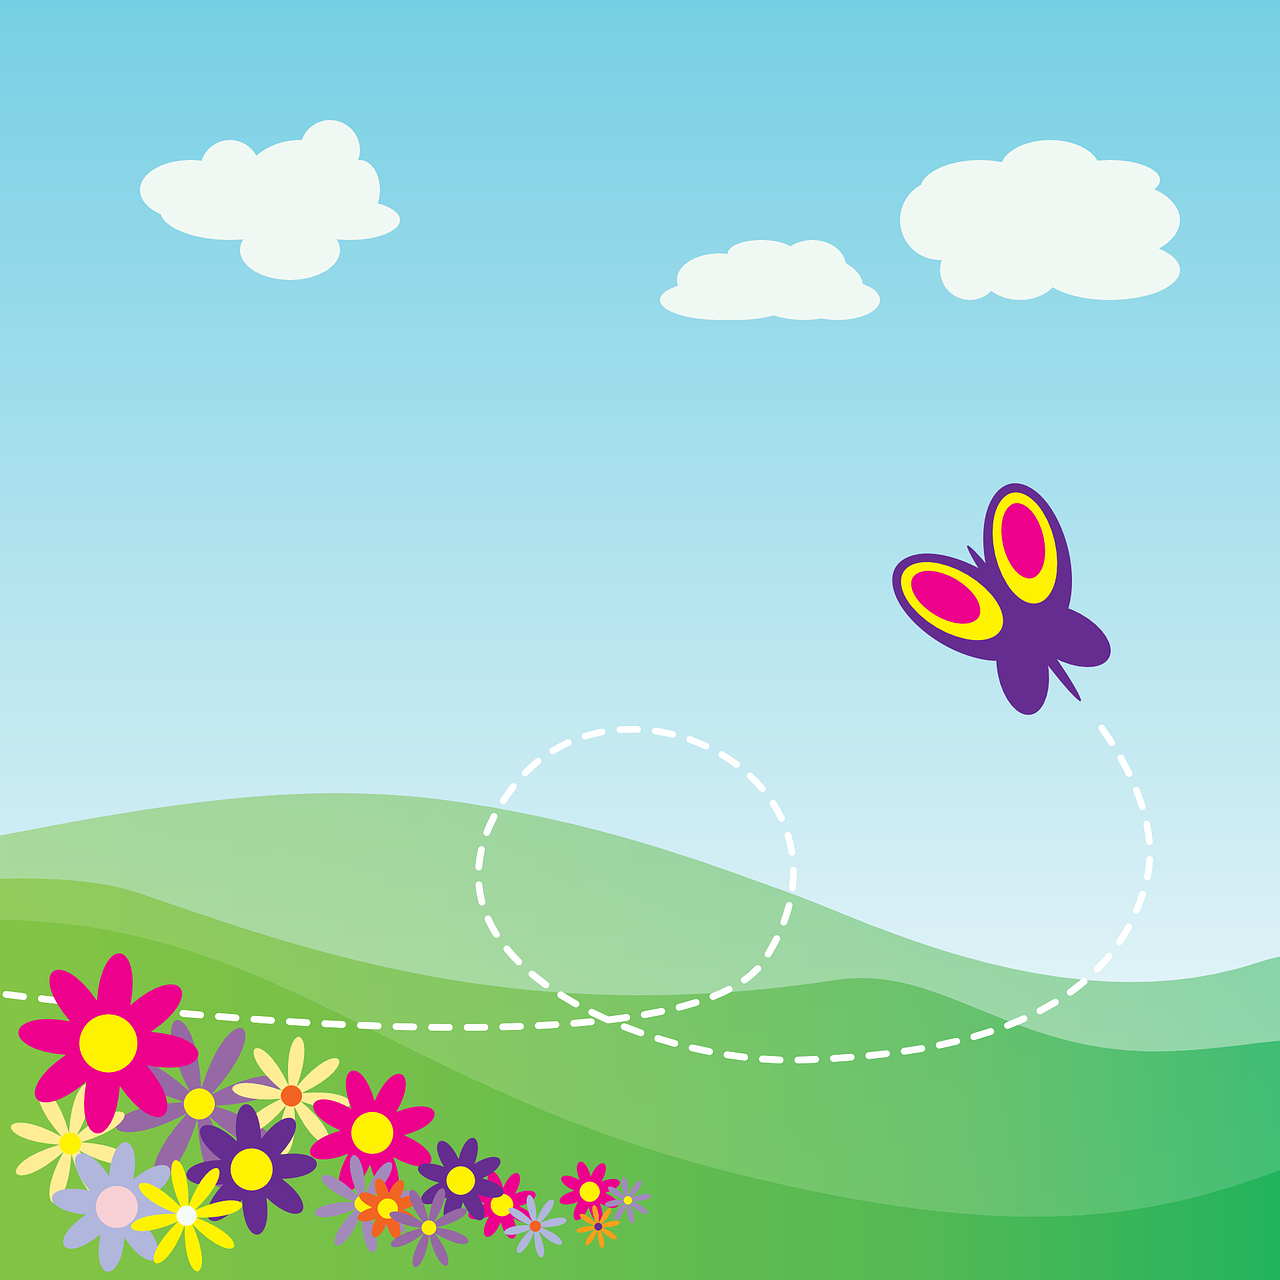 Una mariposa vuela cerca de las flores, al fondo una montañas.